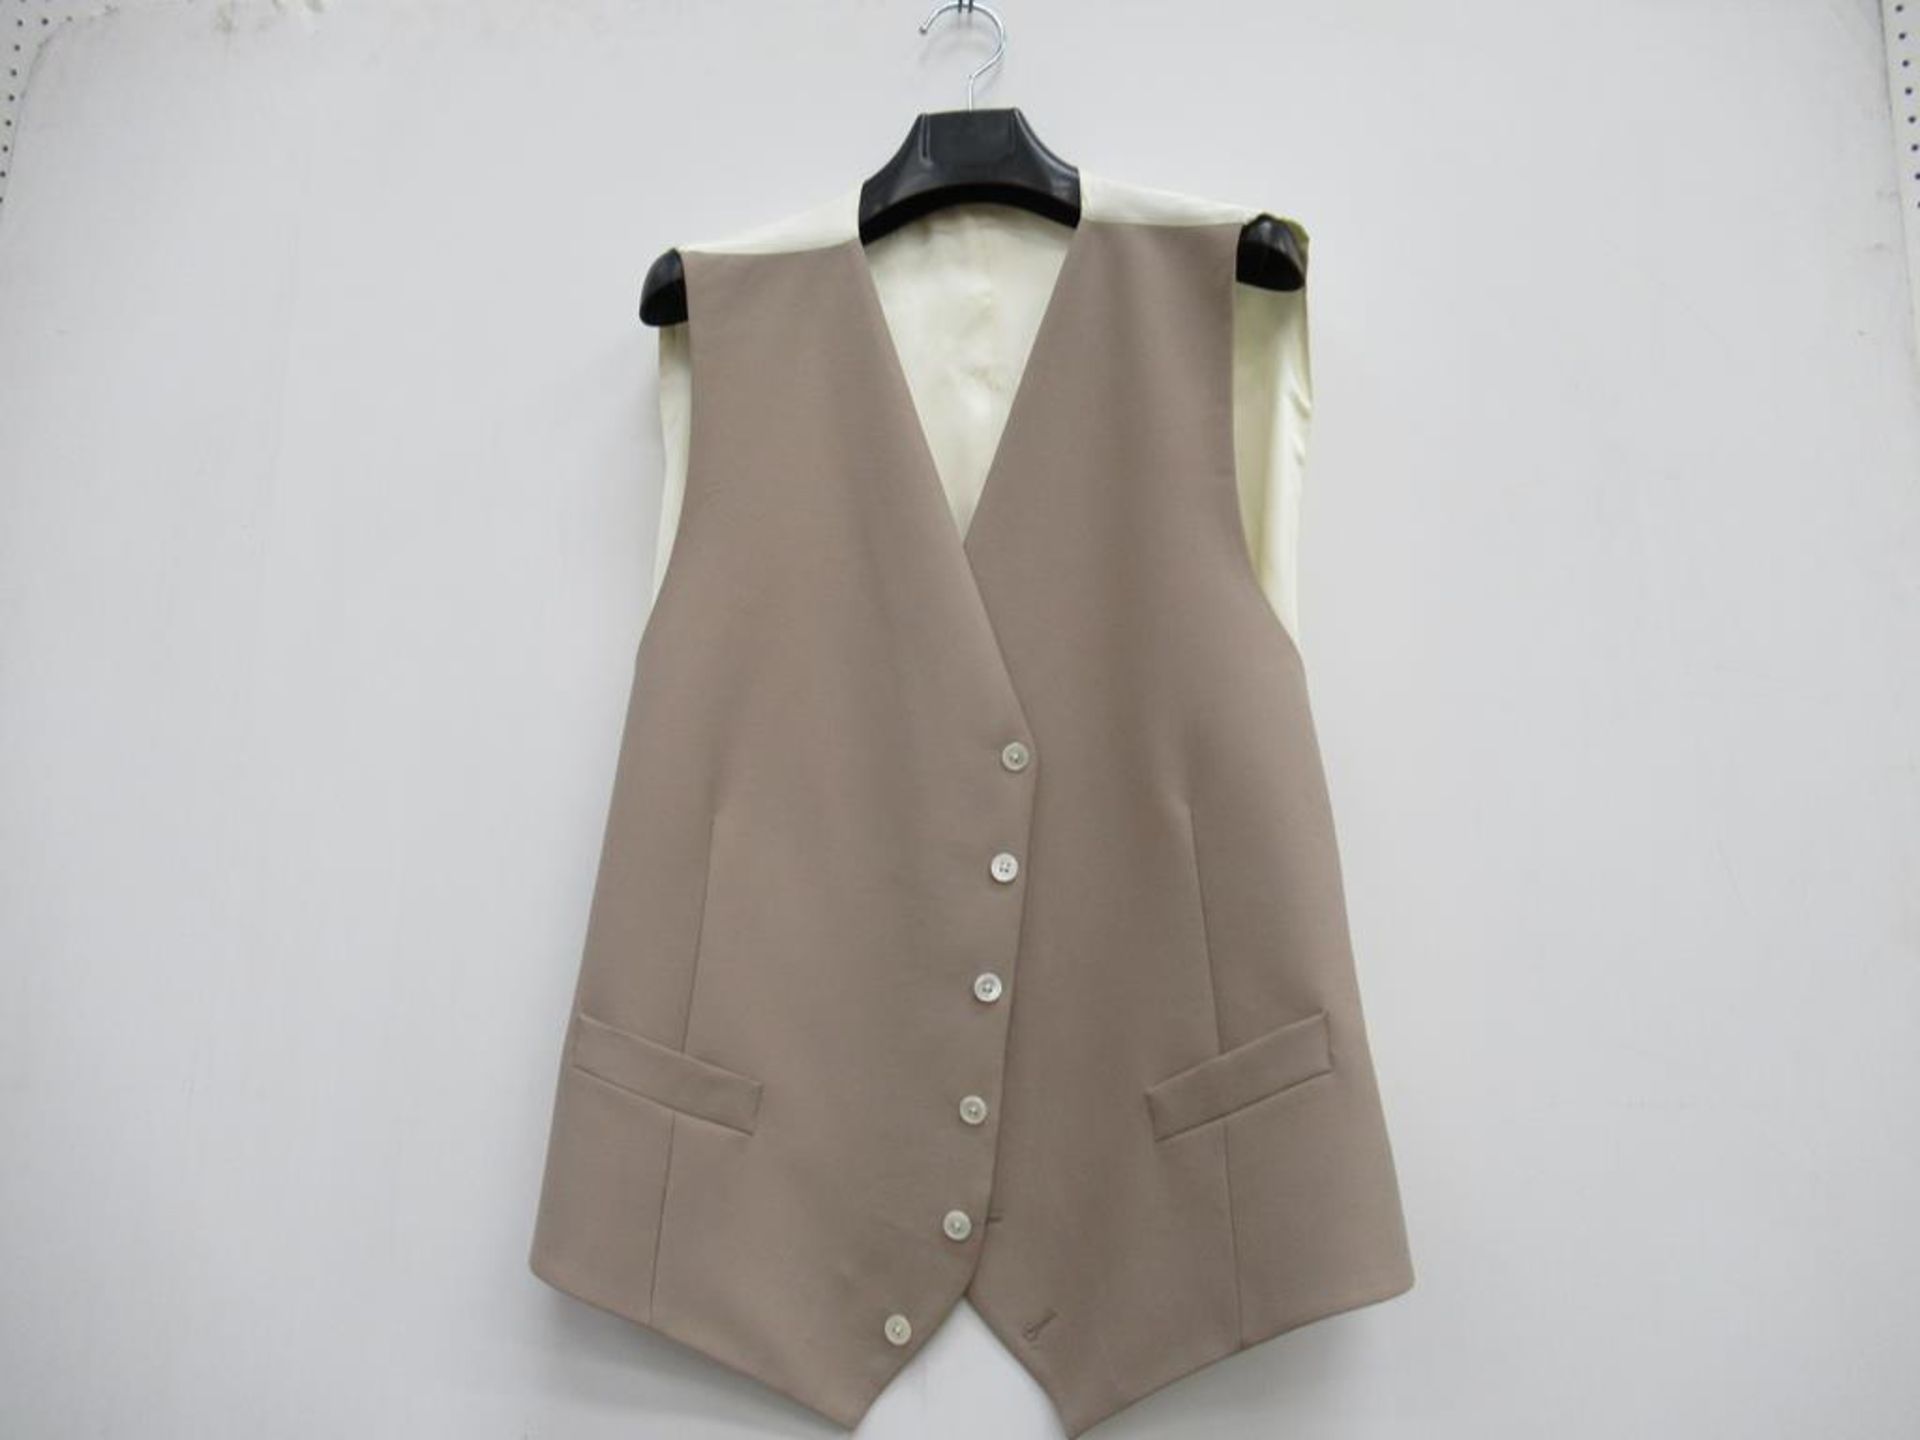 Fitzrovia morning coat and waistcoats - Image 2 of 3